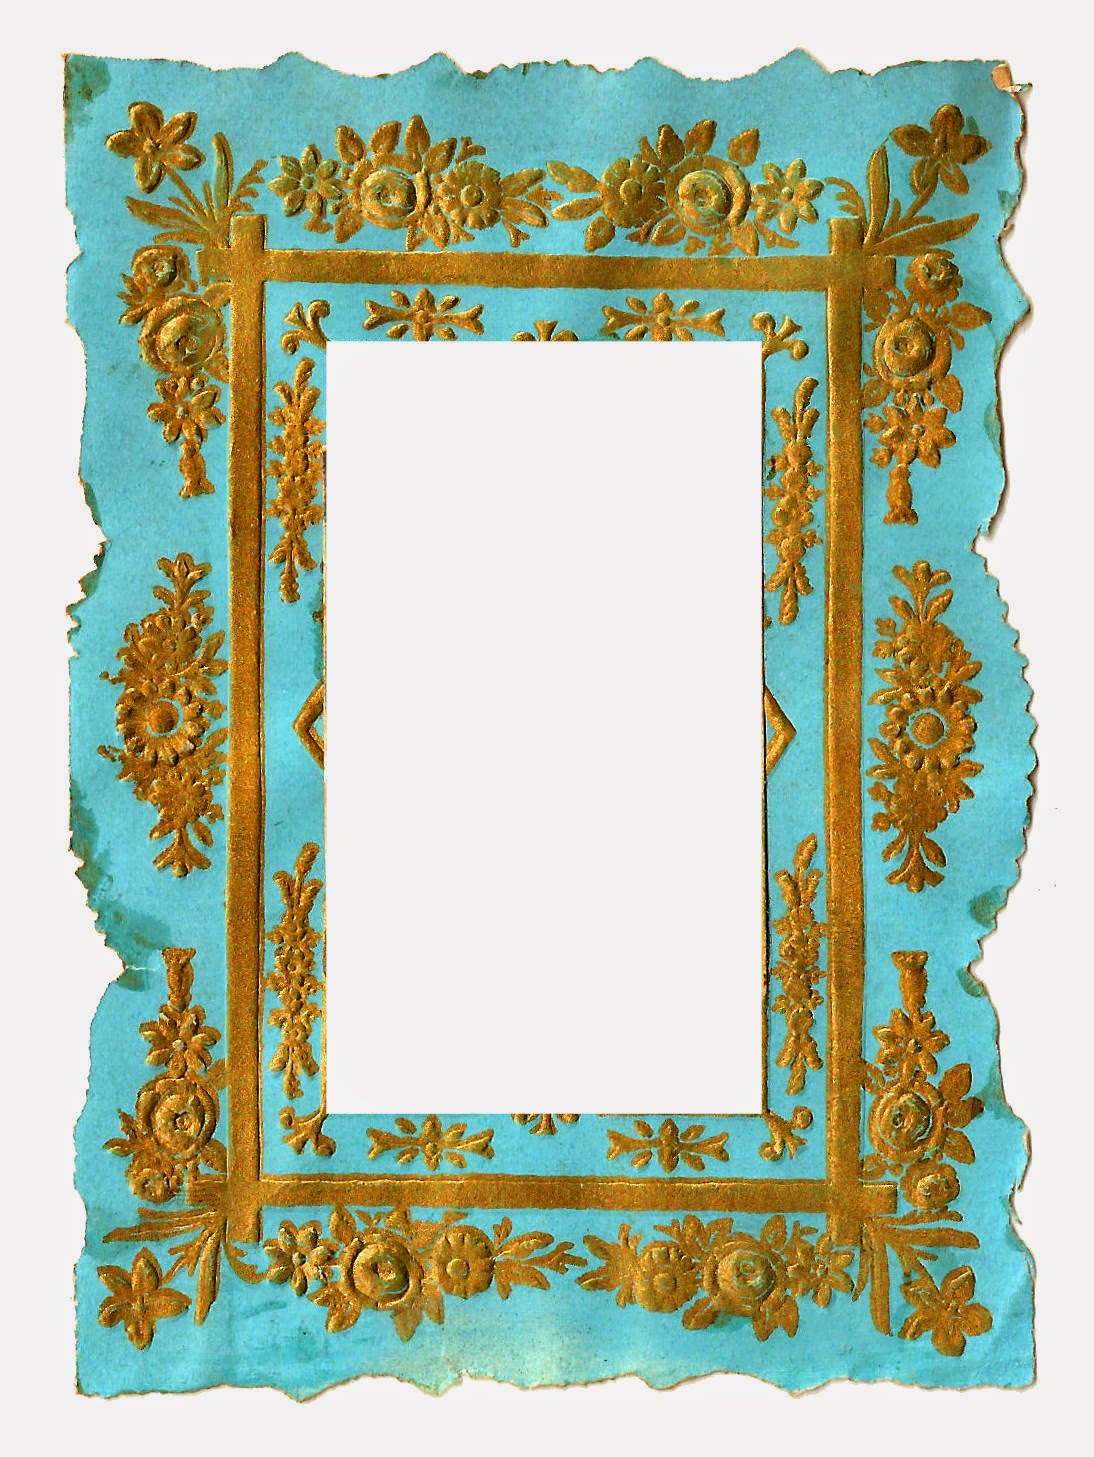 Antique Images Digital Vintage Frame Clip Art Of Blue And Gold